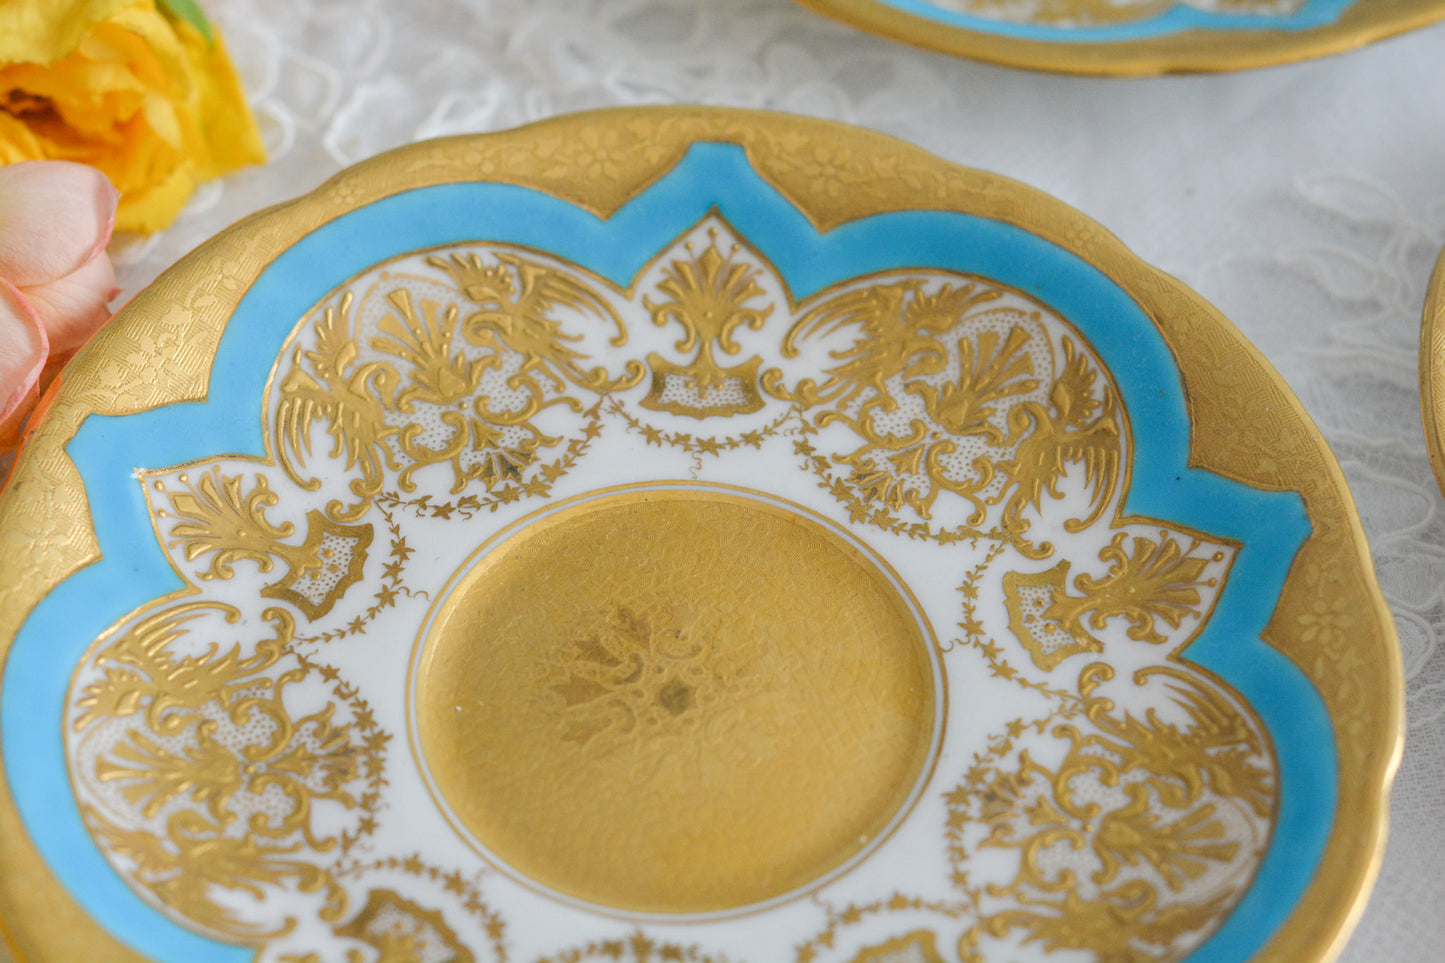 コールポートの金盛りとターコイズブルーの美しいソーサー。立体的な金彩が大変美しいです。Rose Antiquesは英国アンティーク、英国ヴィンテージ食器をご紹介しています。